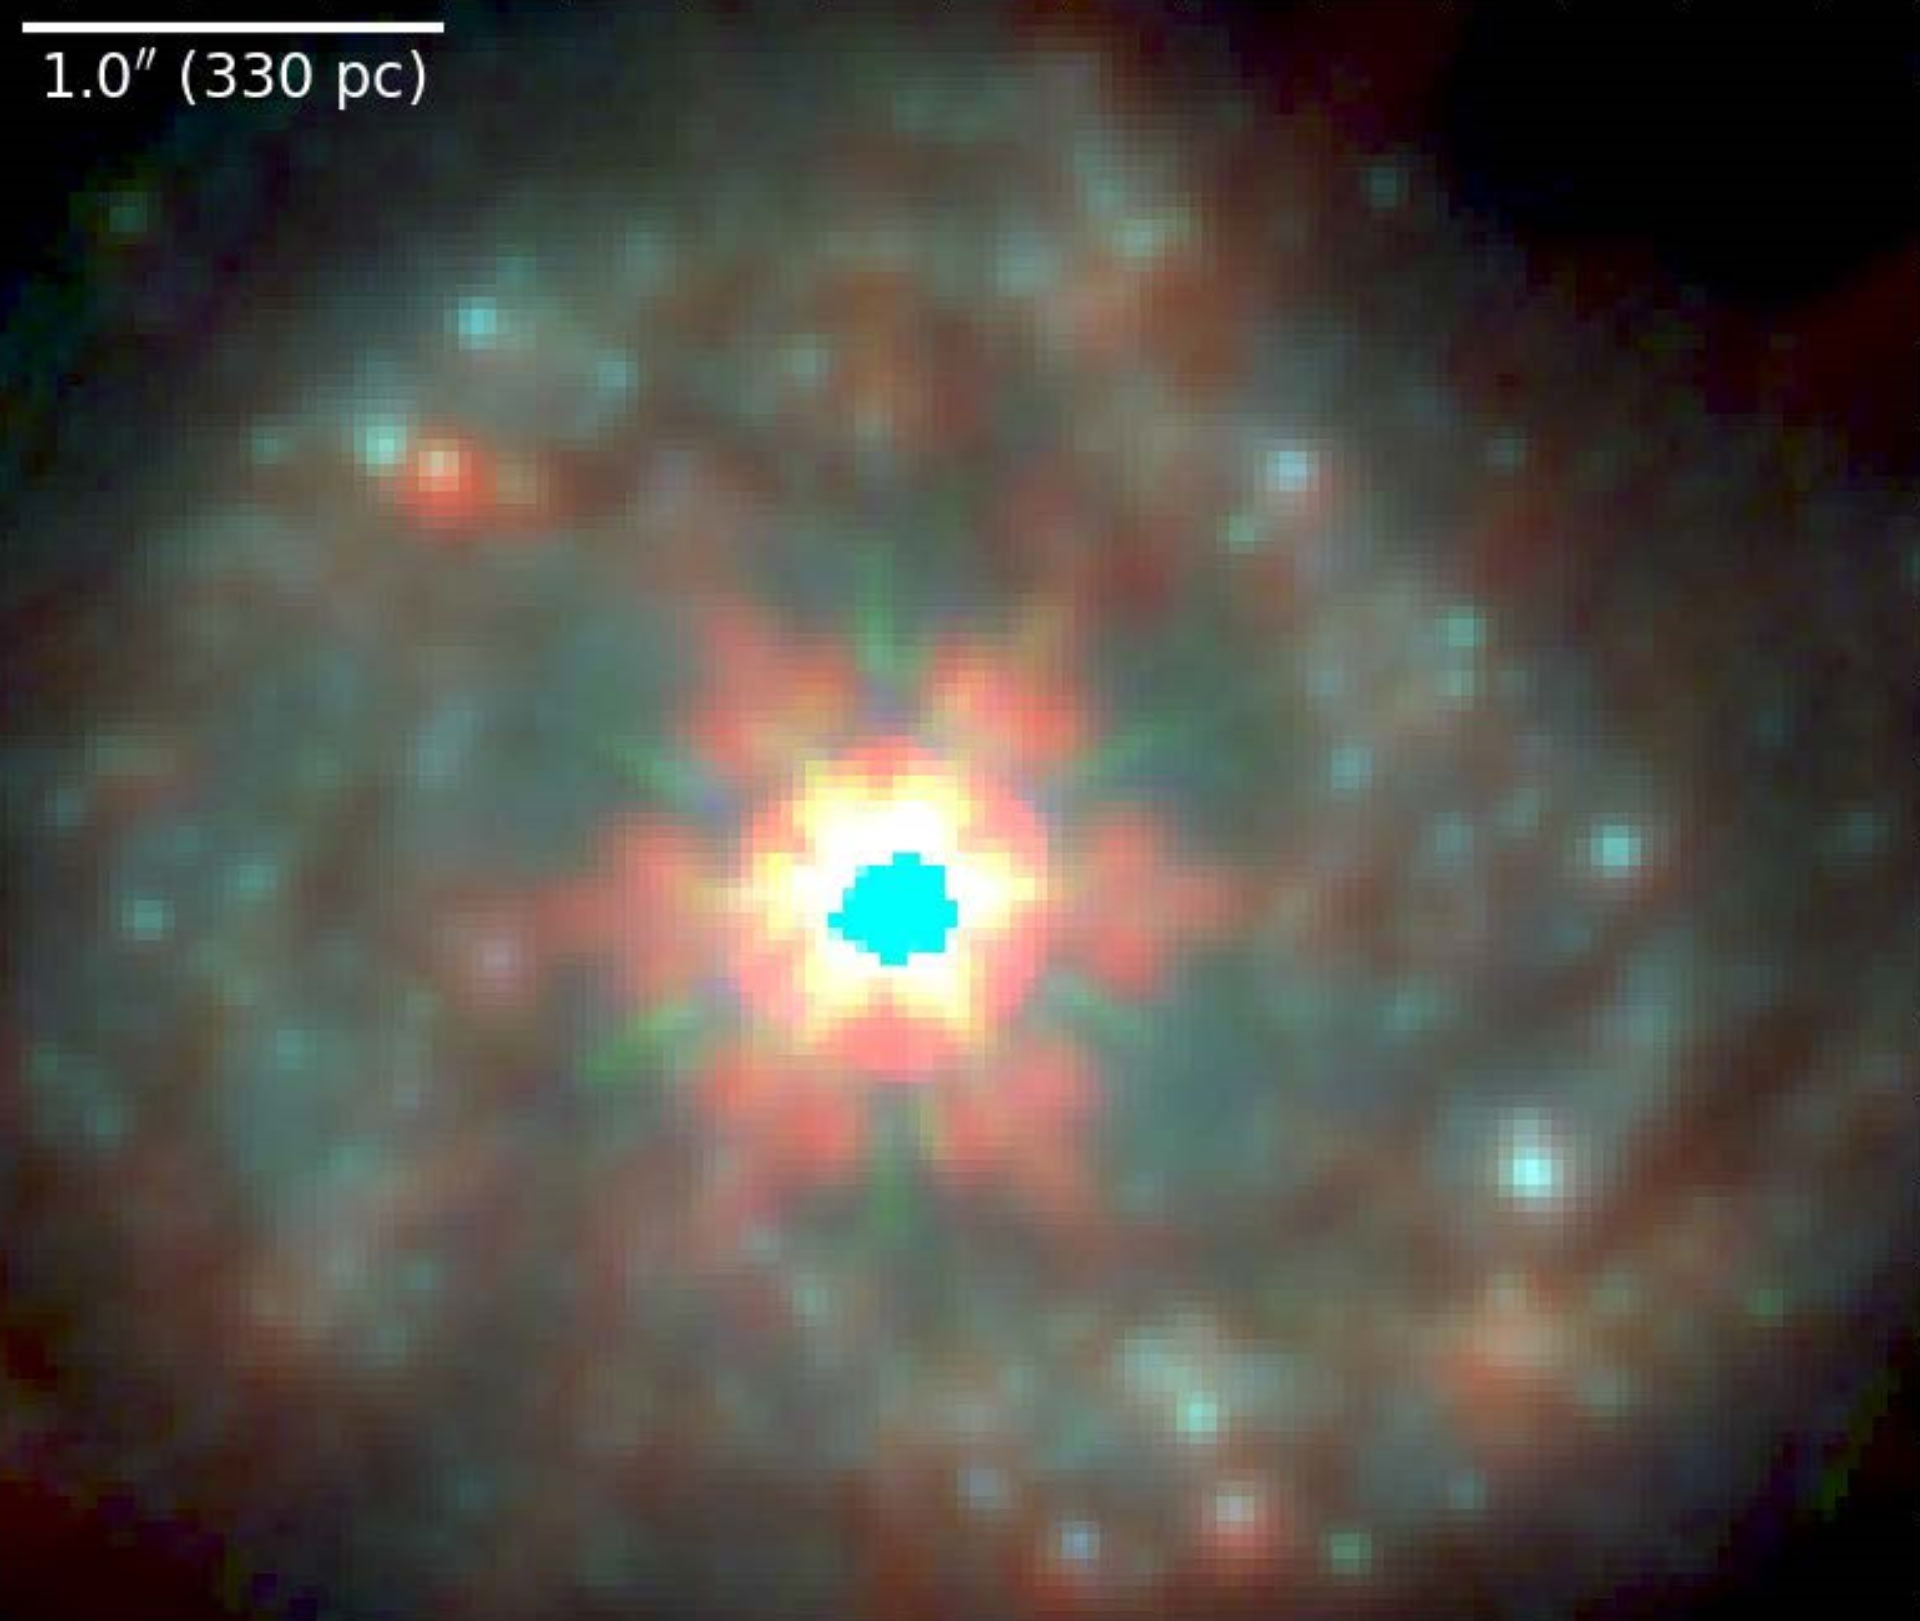 Активное ядро в спиральной галактике NGC 7469